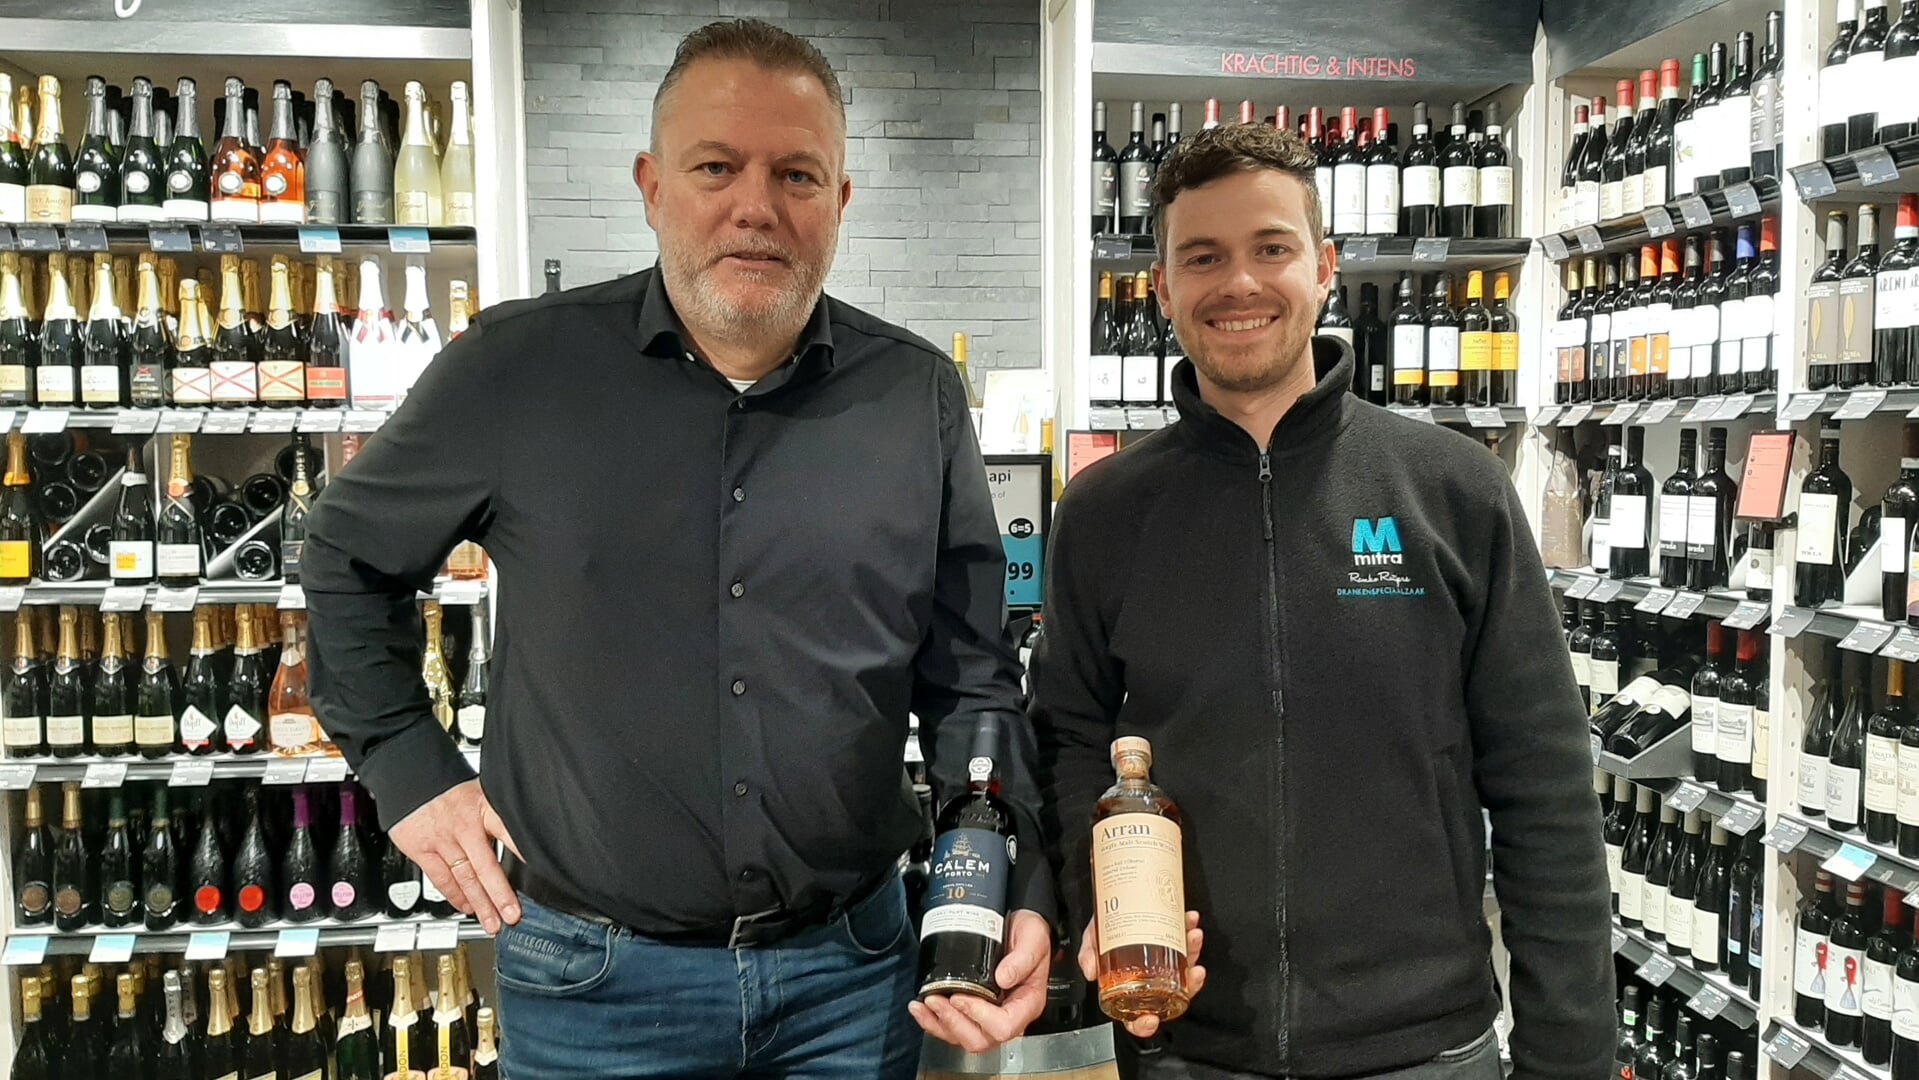 Eigenaren Remko Rutgers en Emil Buring verkopen in hun wijnhoek meerdere enkele exclusieve wijnen.